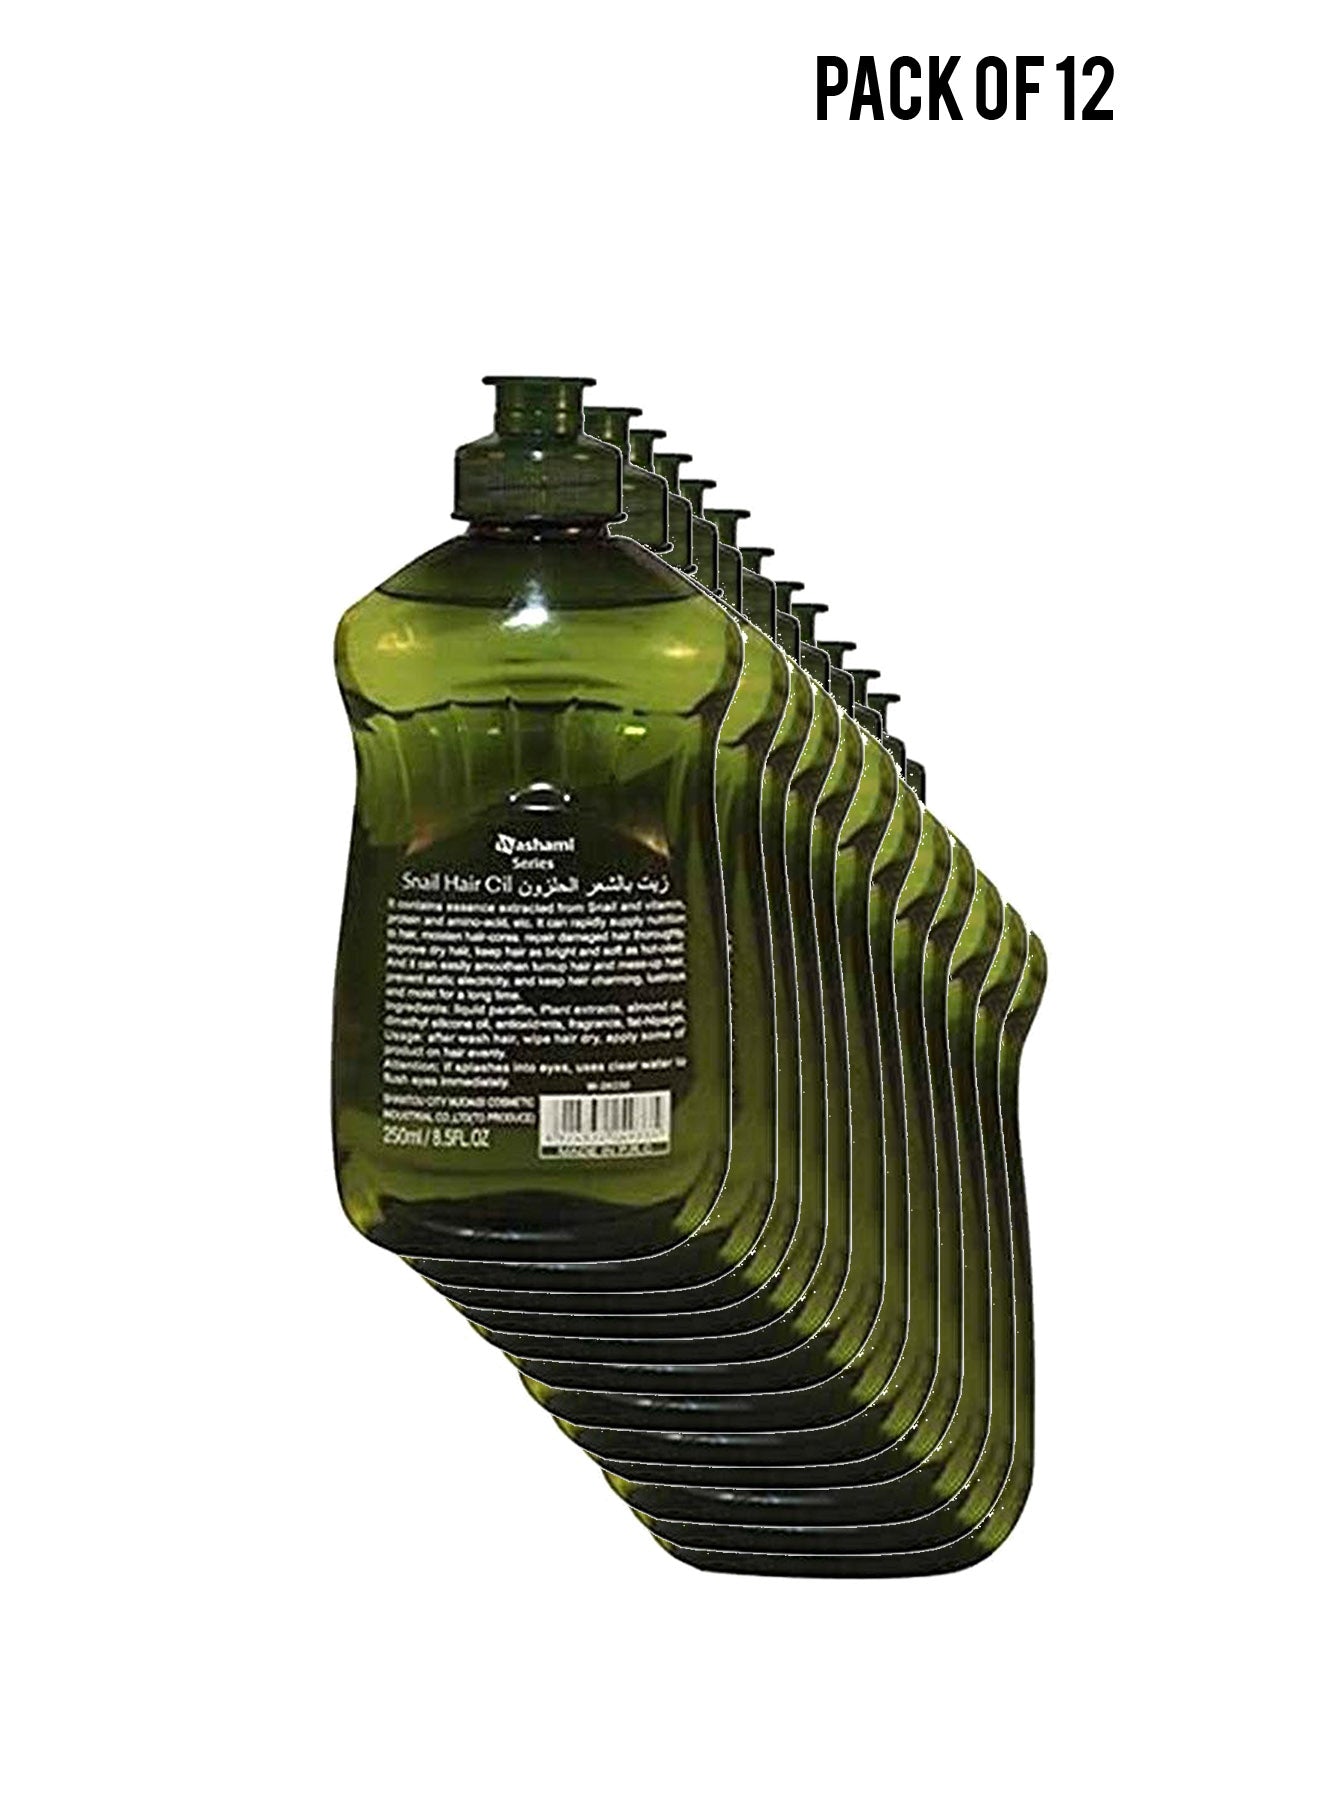 Snail Hair Oil 150 ml Value Pack of 12 